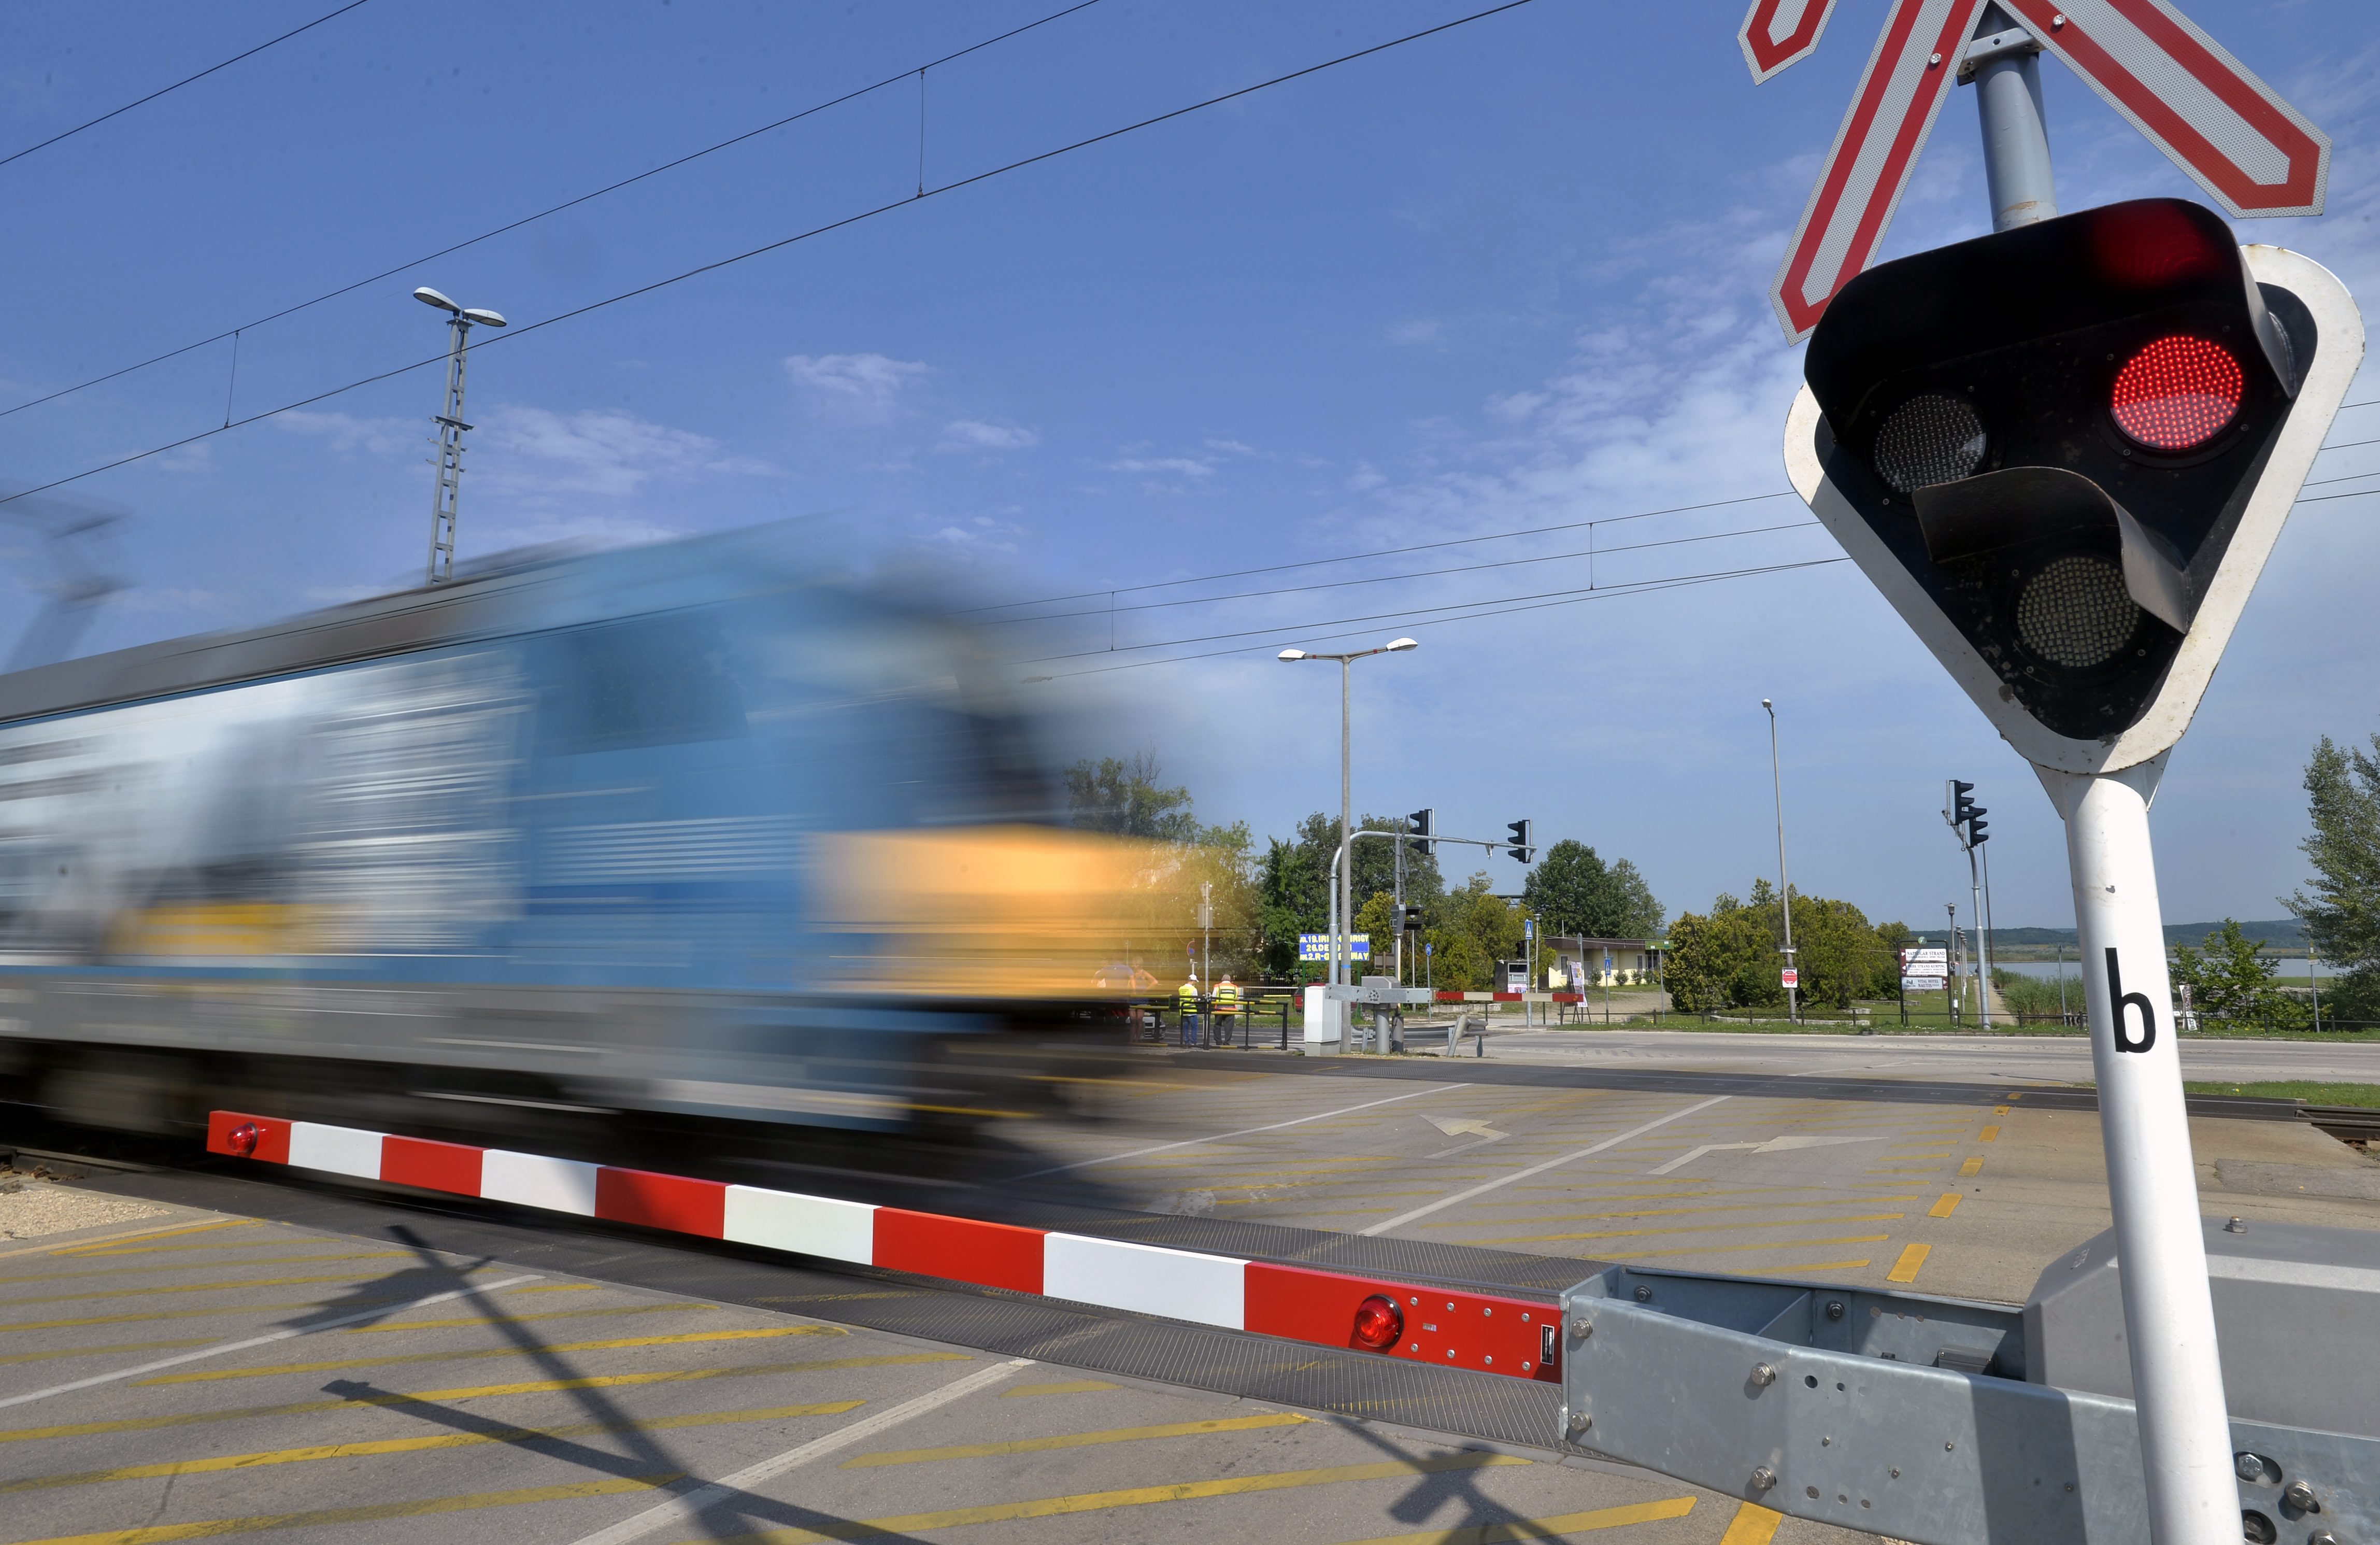 A vasúti sínen hagyta az utasokkal teli buszt a sofőr, jött a vonat - Blikk